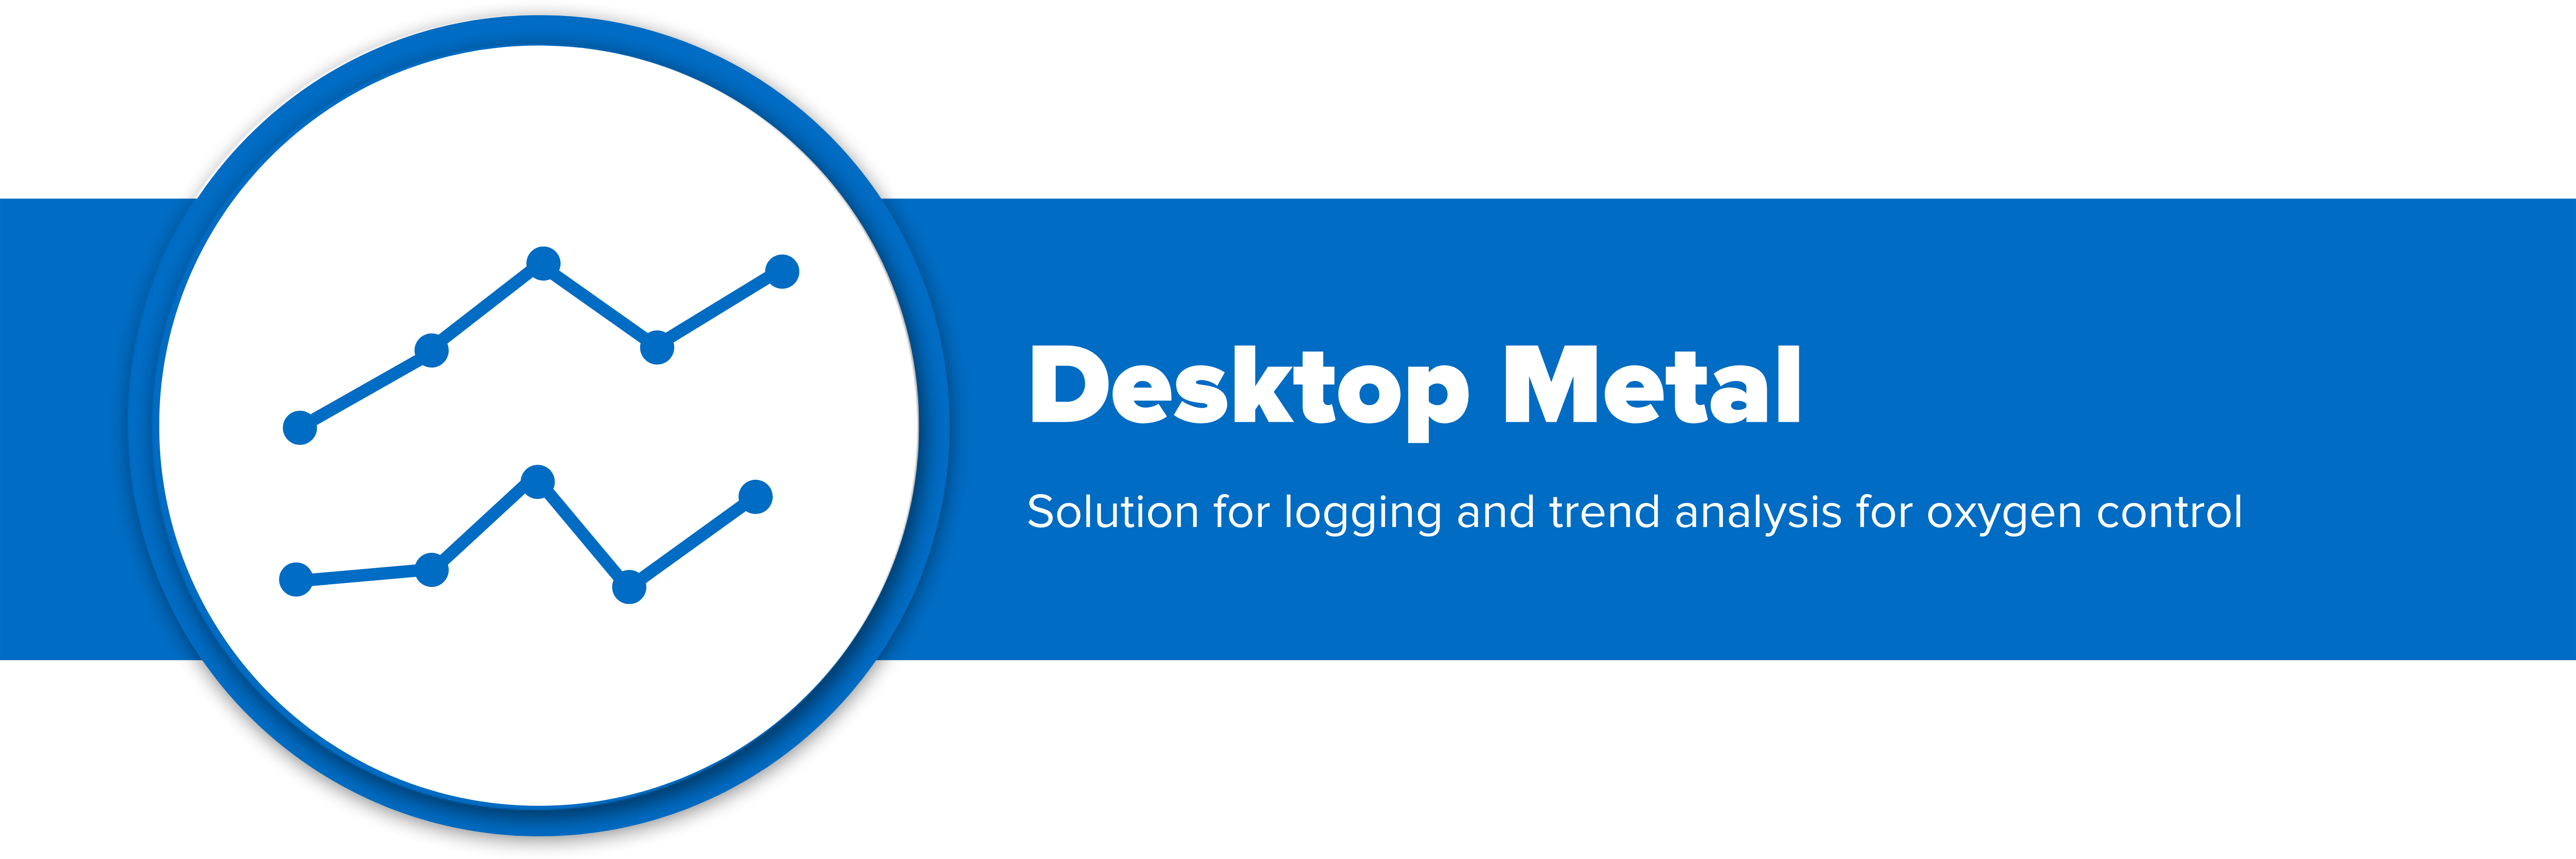 Header image with text "Desktop Metal"